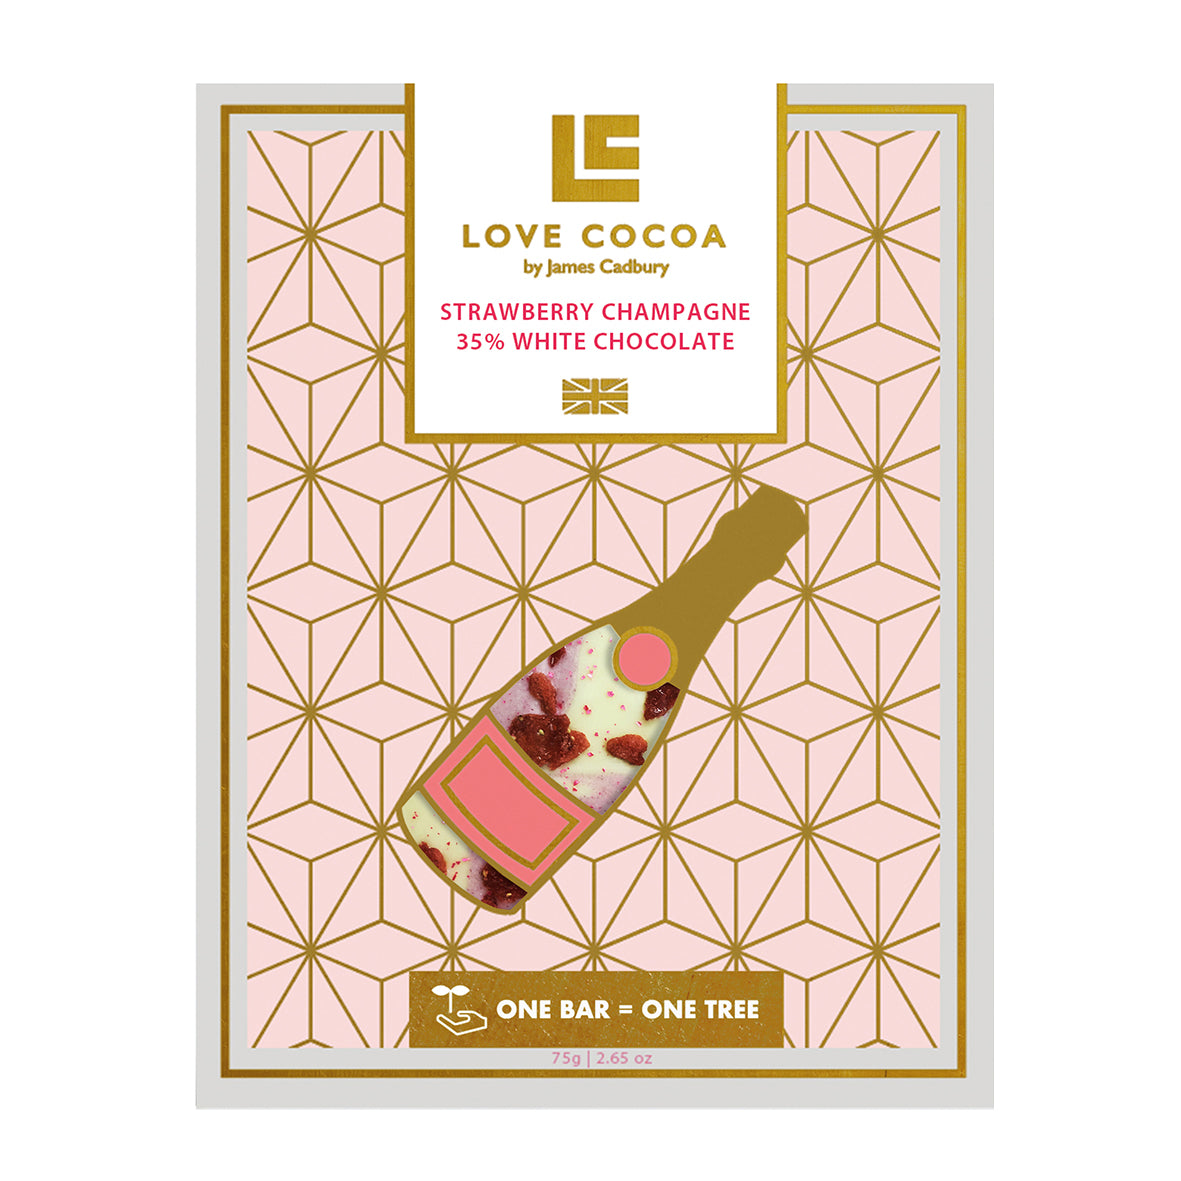 Love Cocoa White Chocolate Strawberry Champagne